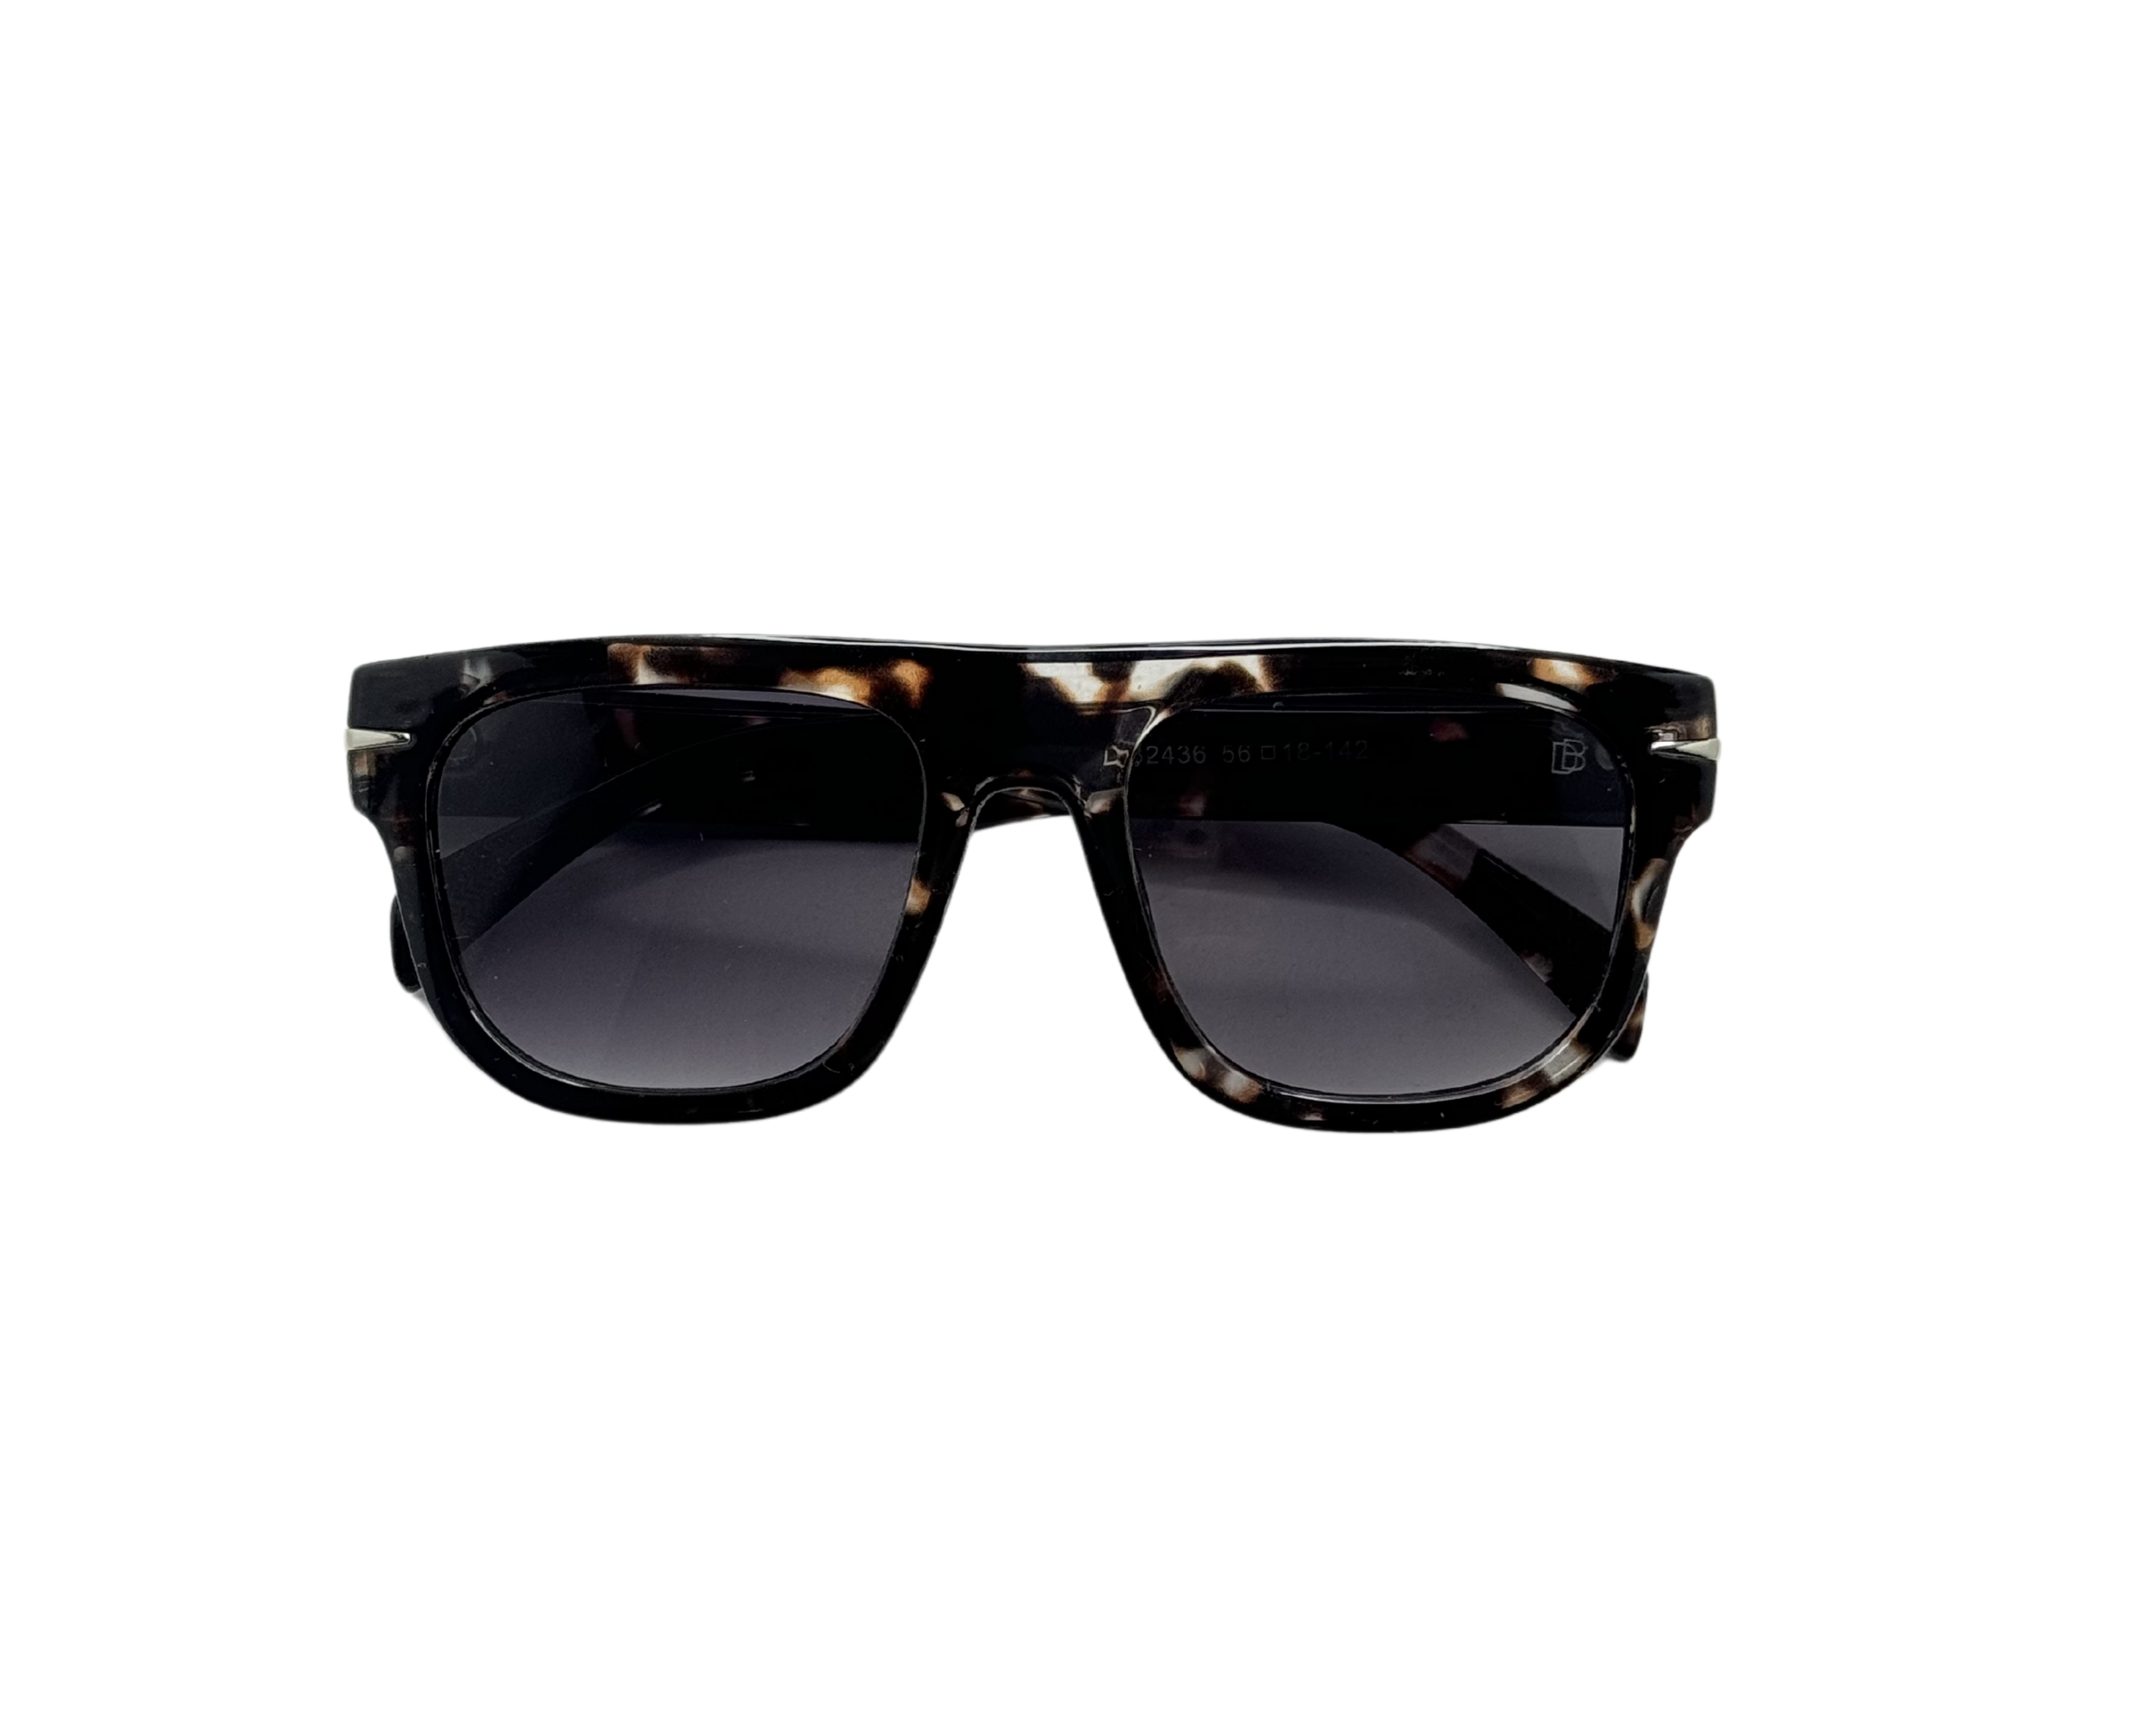 NS Deluxe - 2436 - Tortoise - Sunglasses